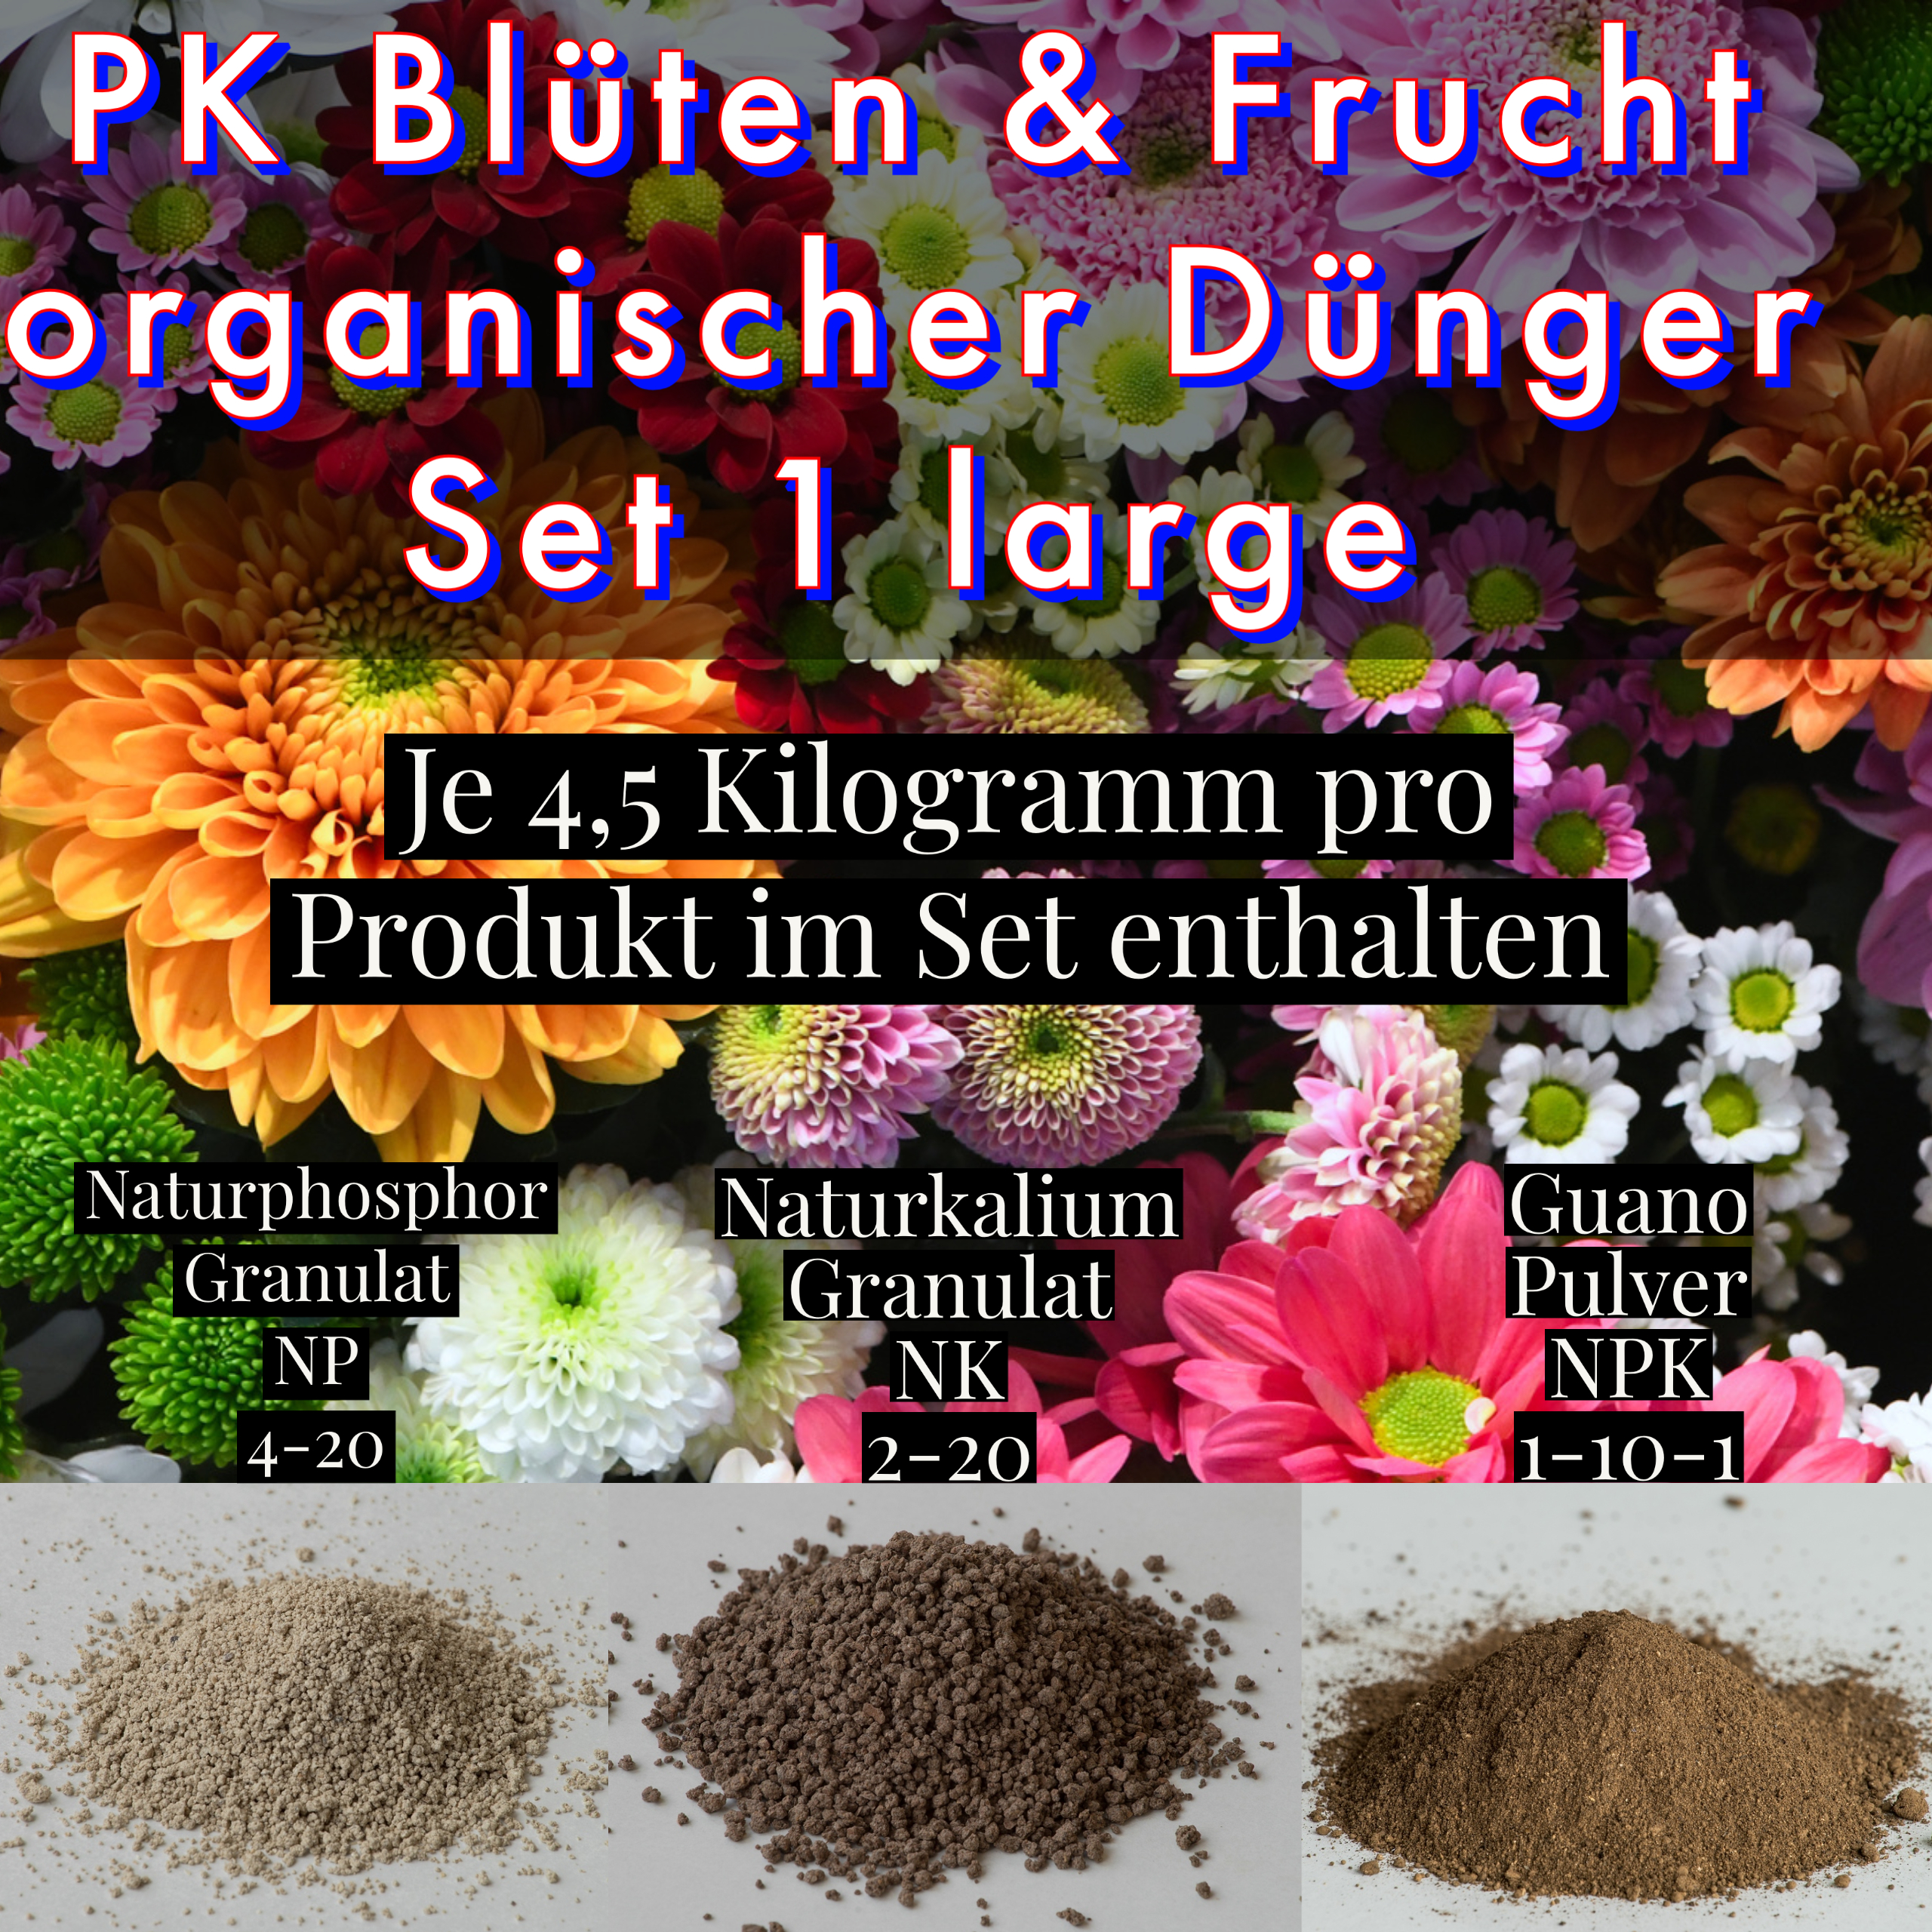 PK Blüten & Frucht organischer Dünger Set 1 large-1